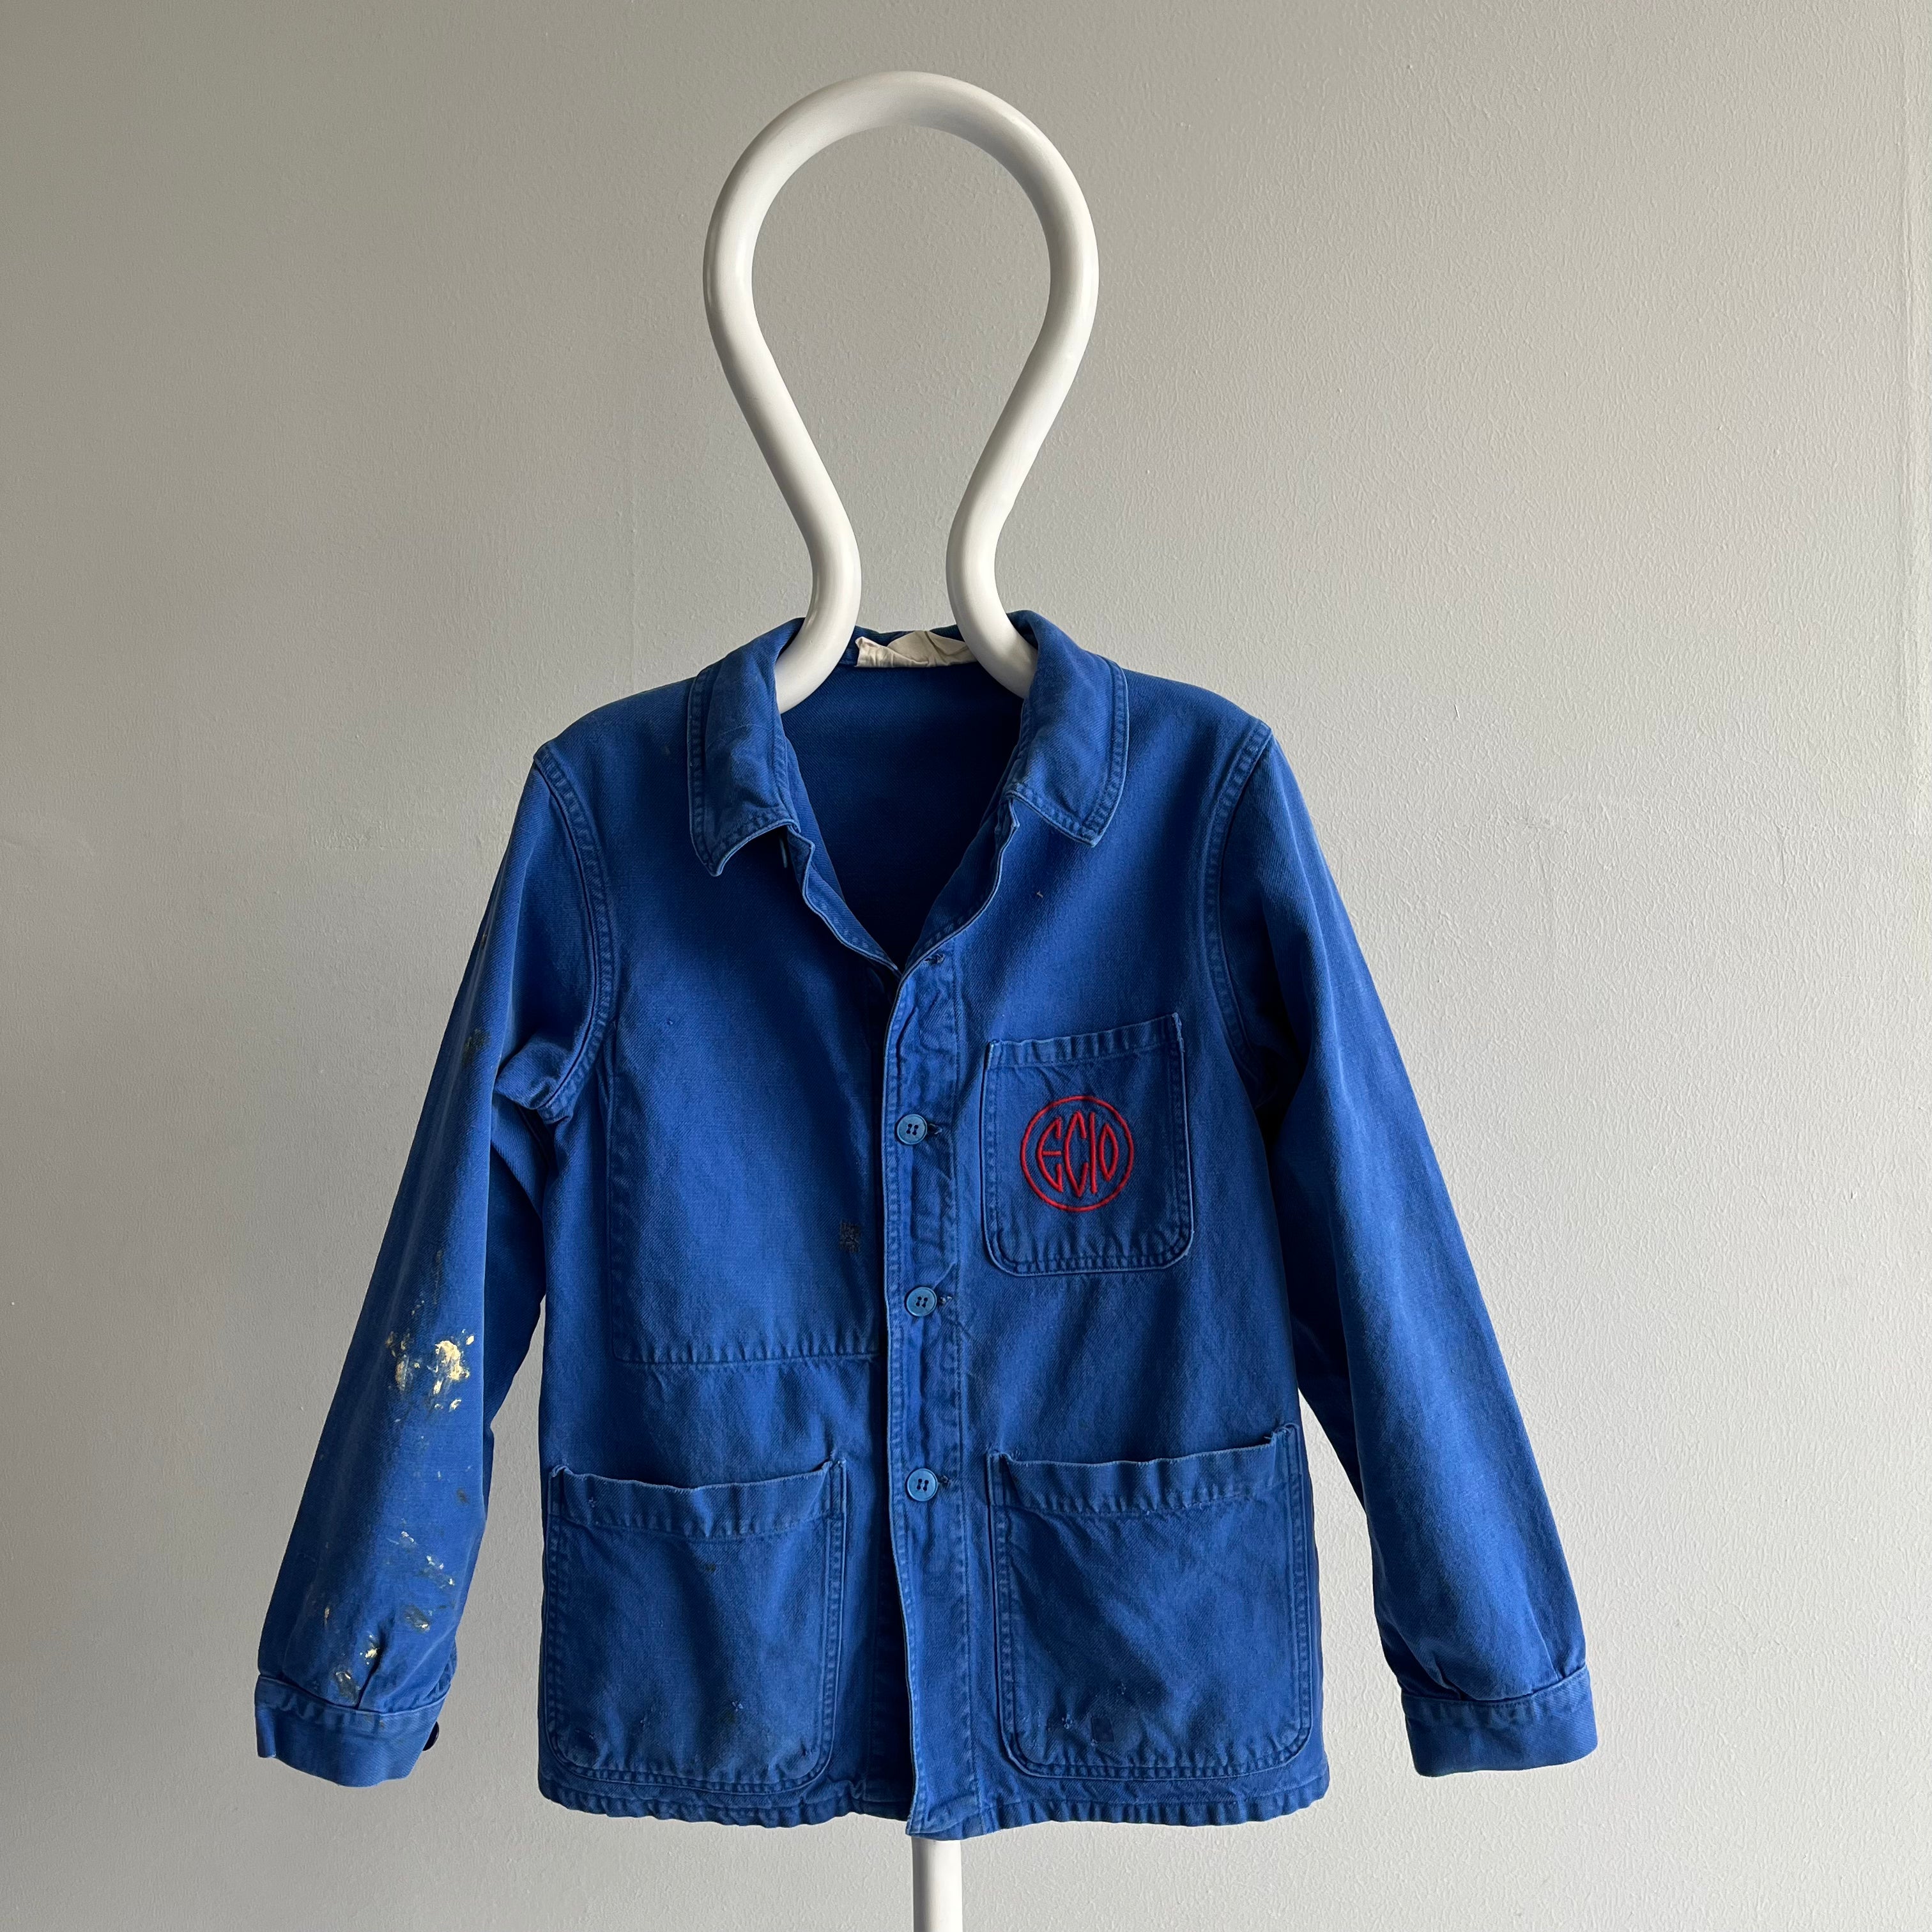 1980/90s Cotton European Chore Coat